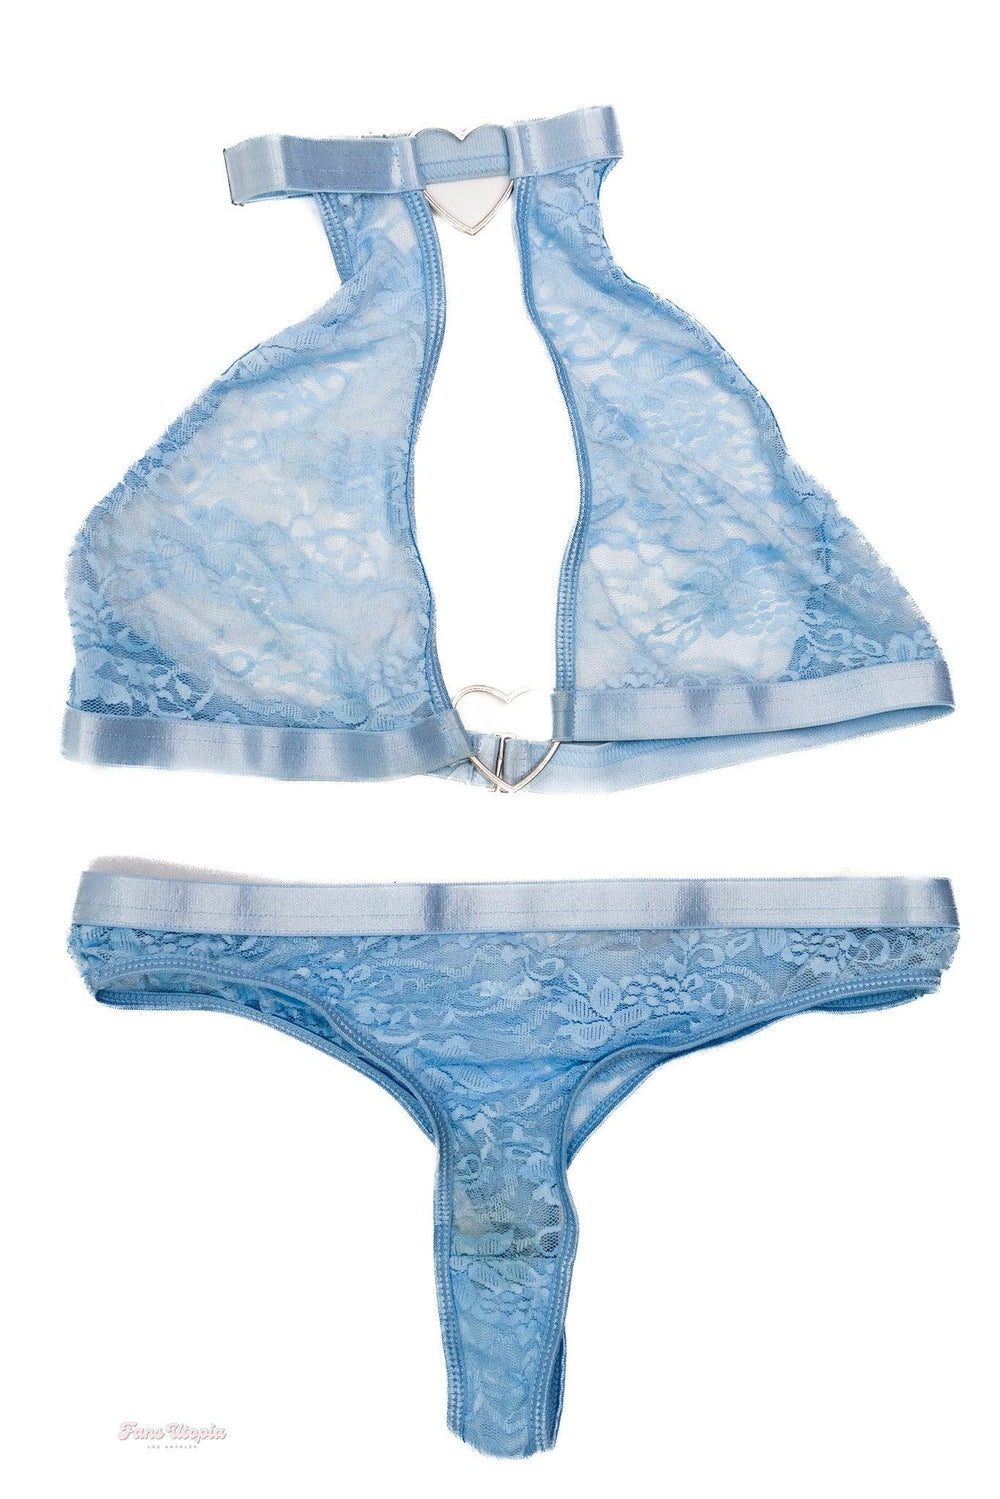 Roxi Sinner Blue Heart Lace Bra & Panty Set + White String Heels - FANS UTOPIA